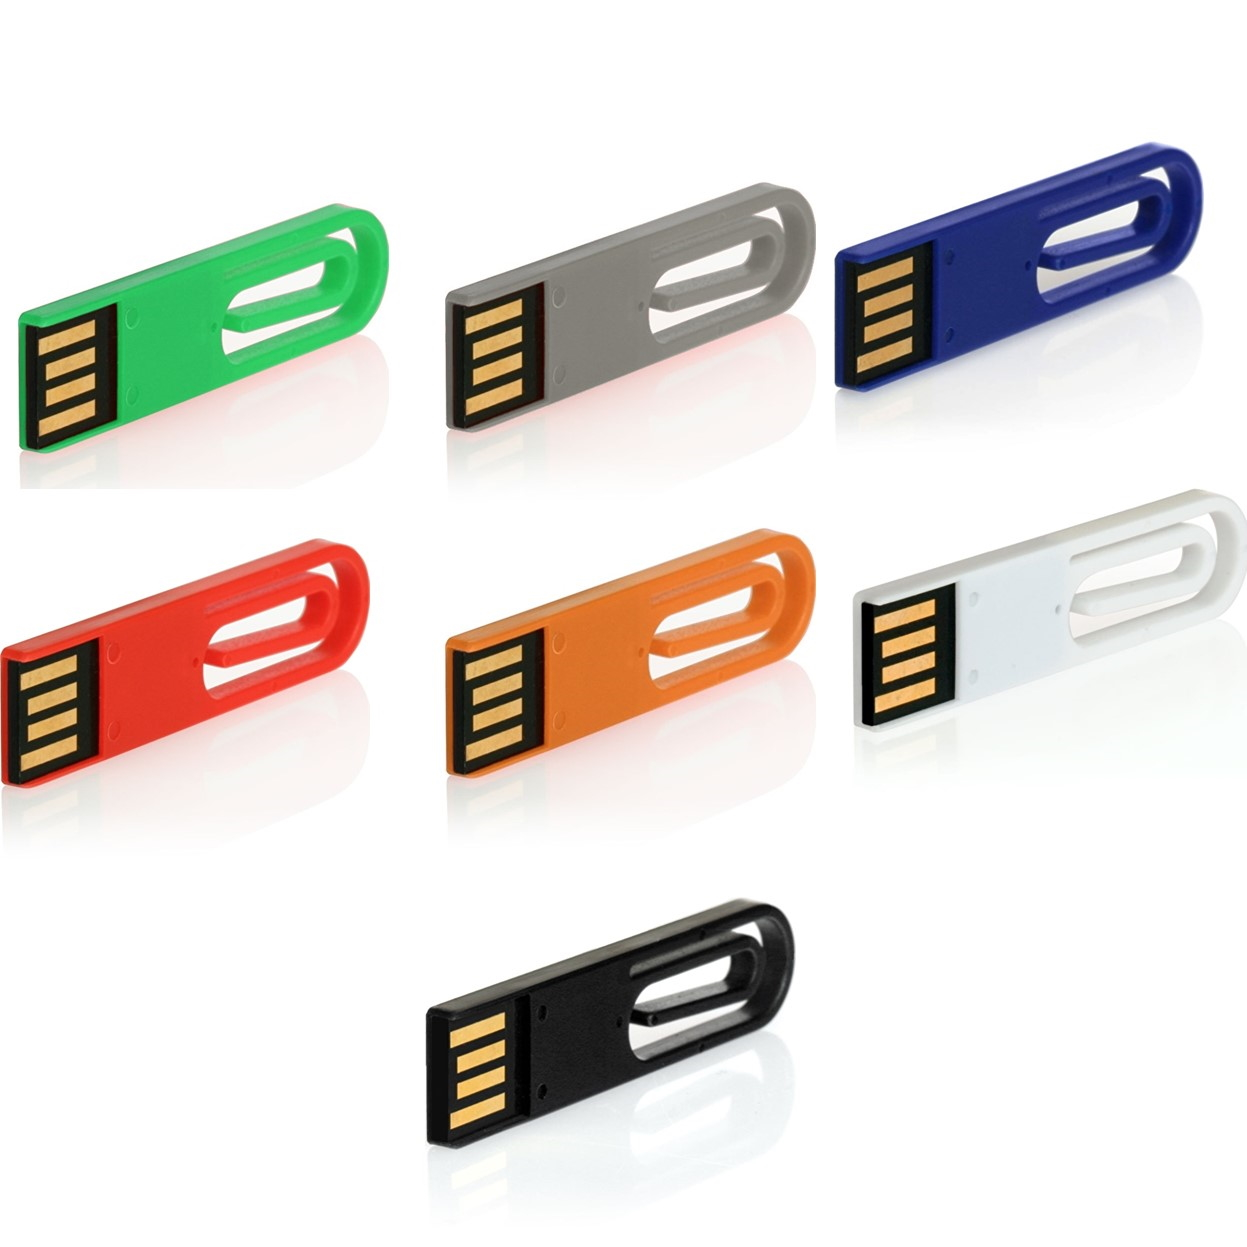 64 GERMANY eCLIP USB-Stick ® USB (Schwarz, GB)